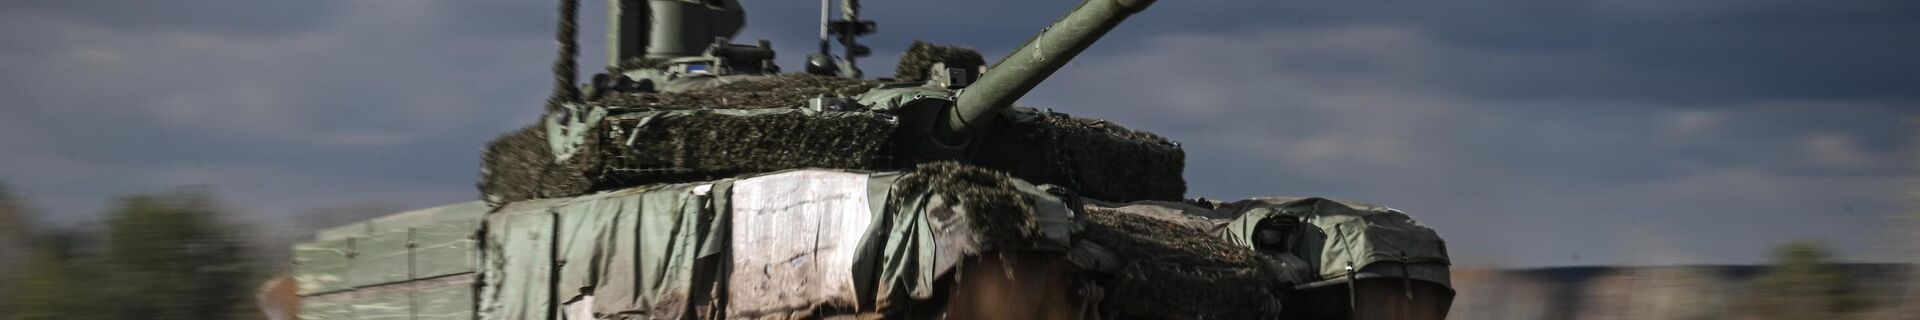 Боевое слаживание экипажей танков Т-90М Прорыв в зоне СВО - Sputnik Беларусь, 1920, 19.02.2022